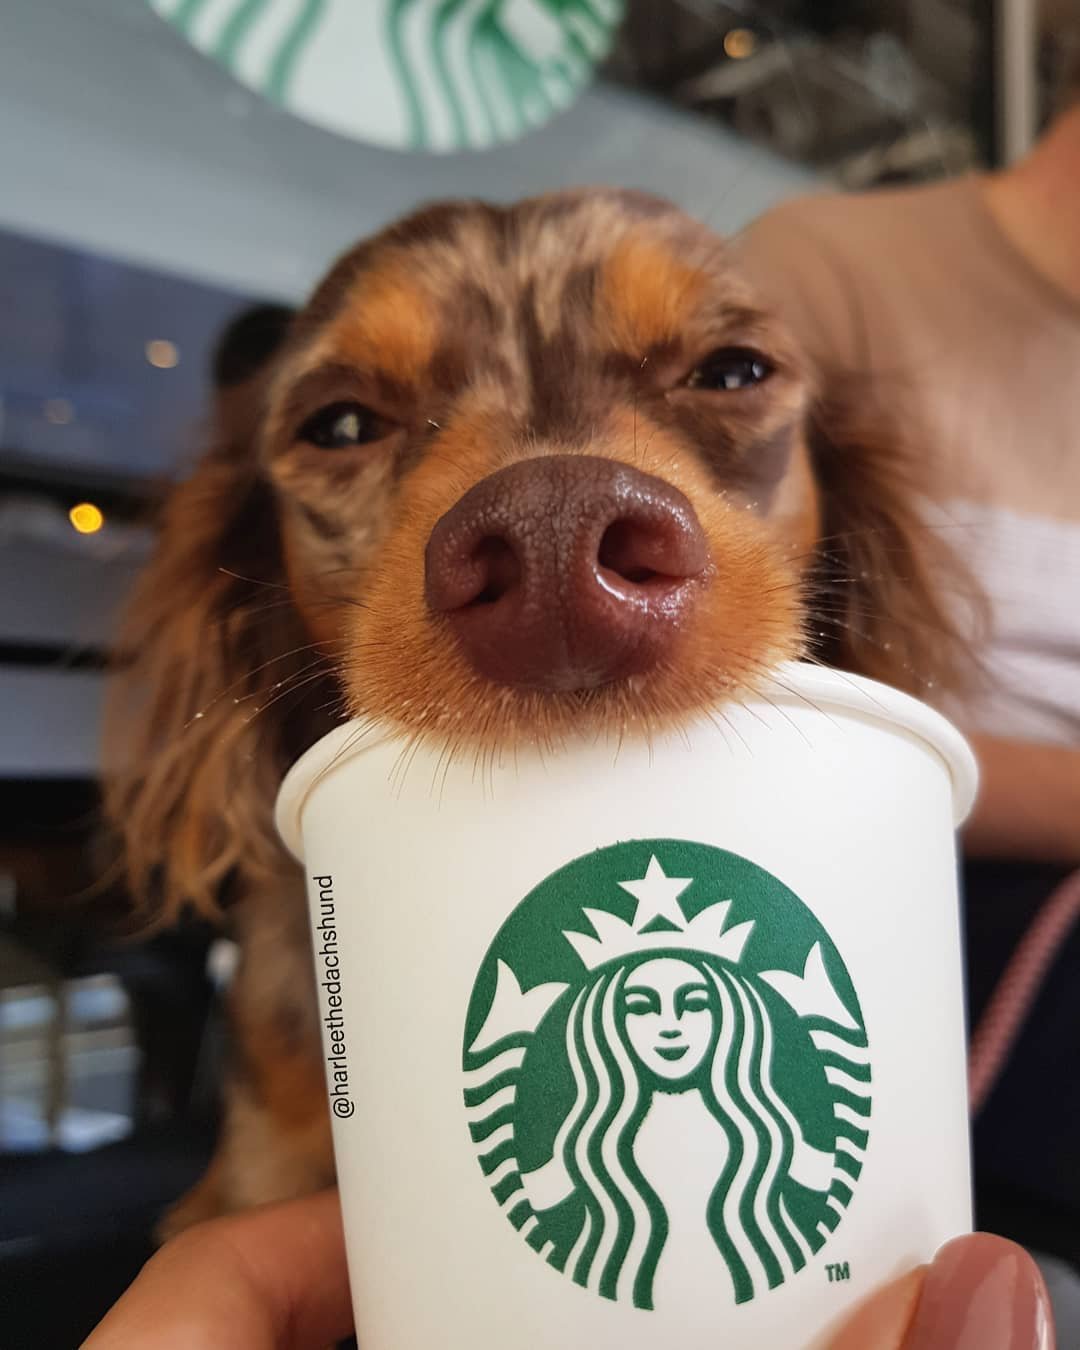 Perrito come su puppuccino de Starbucks